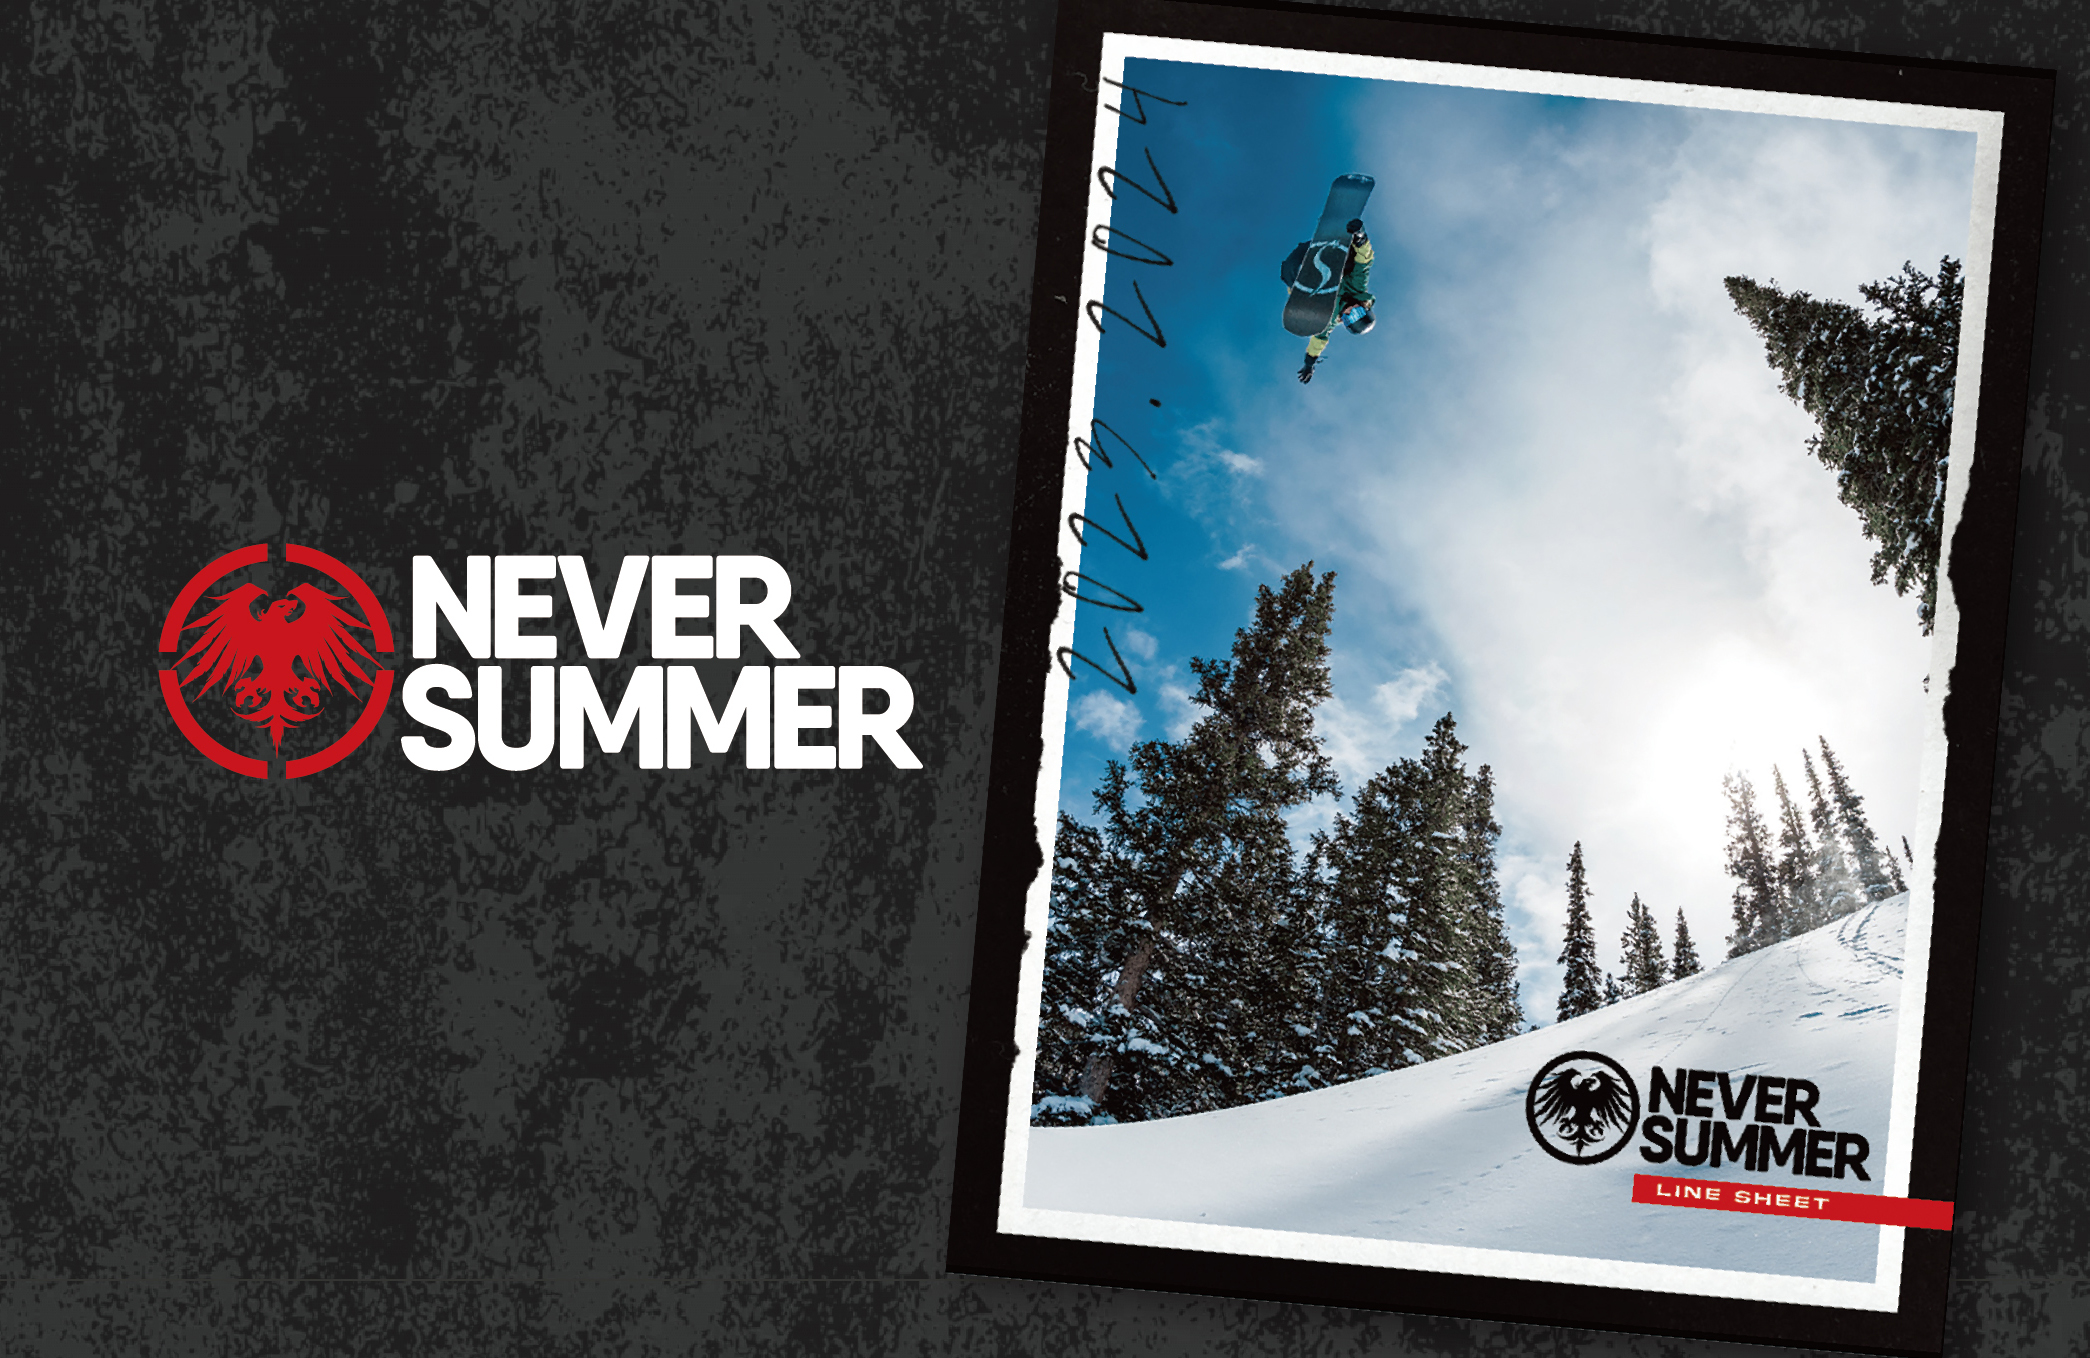 NEVER SUMMER（ネバーサマー） | スノーボーディング WEBメディア SBN 